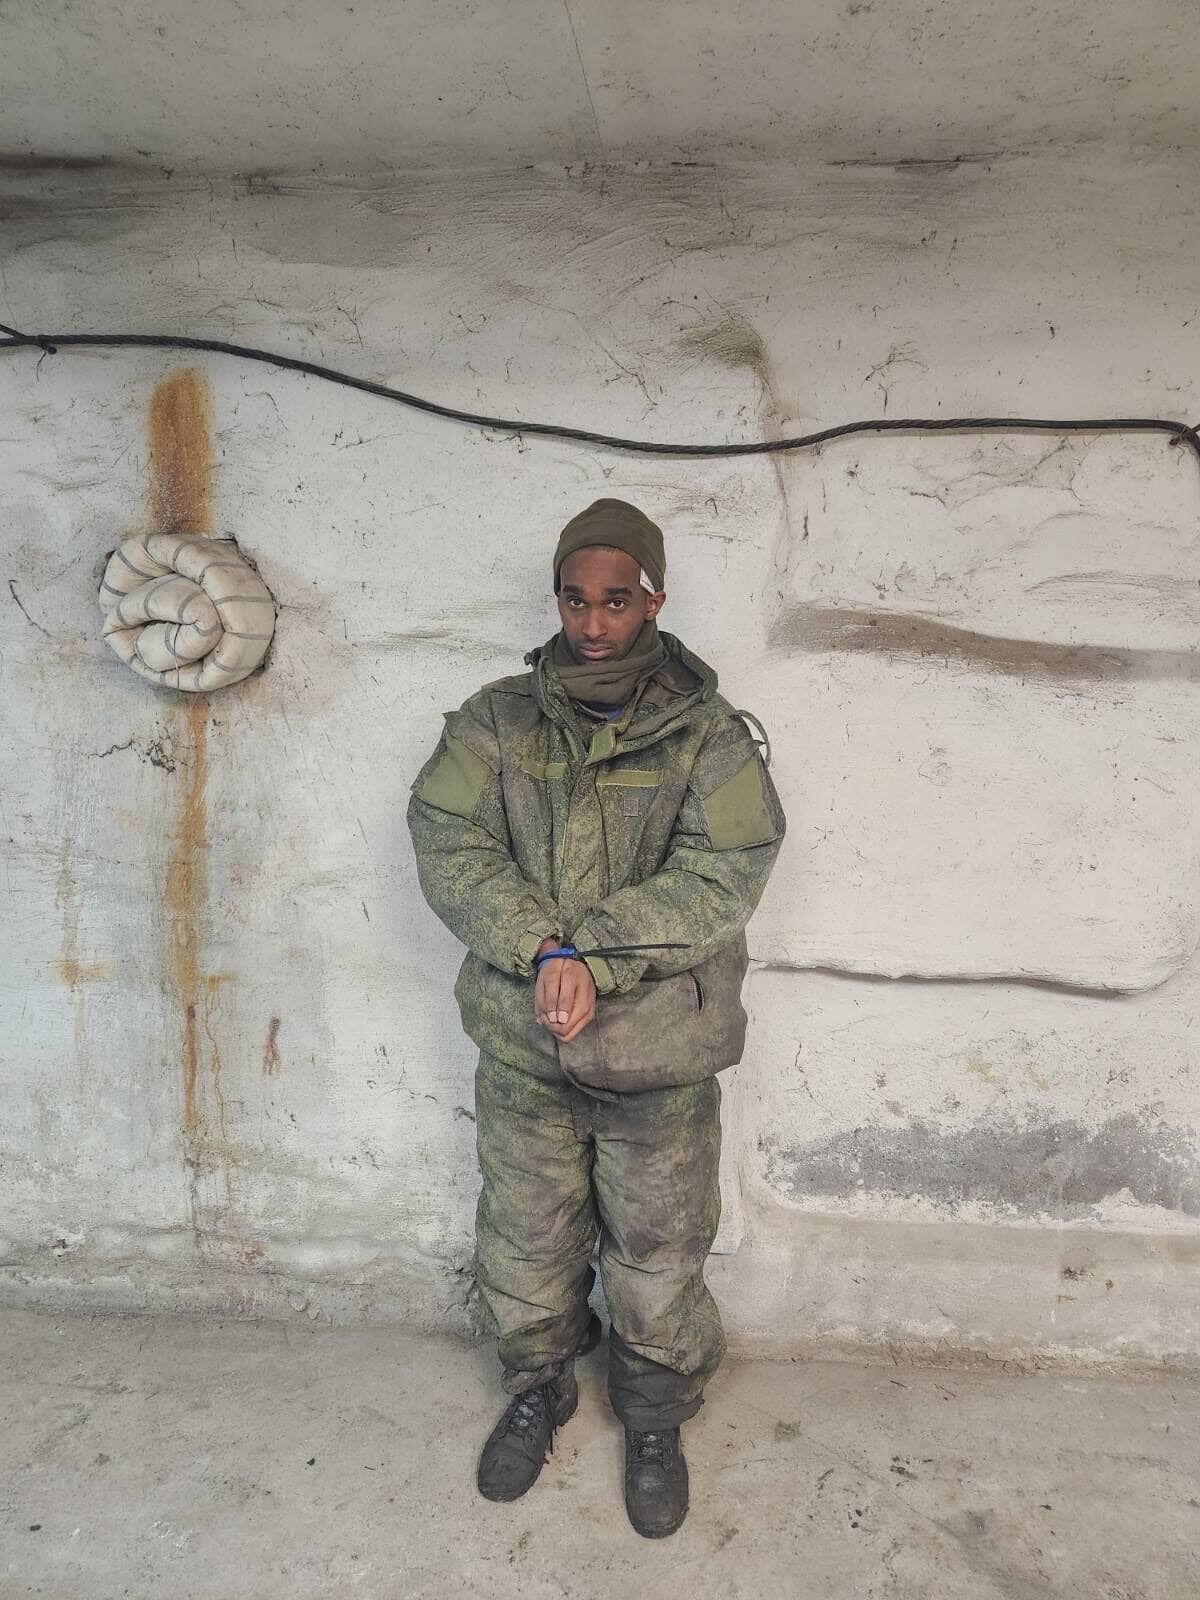 Сомалієць здався у полон ЗСУ і розповів про знущання в армії РФ. Фото